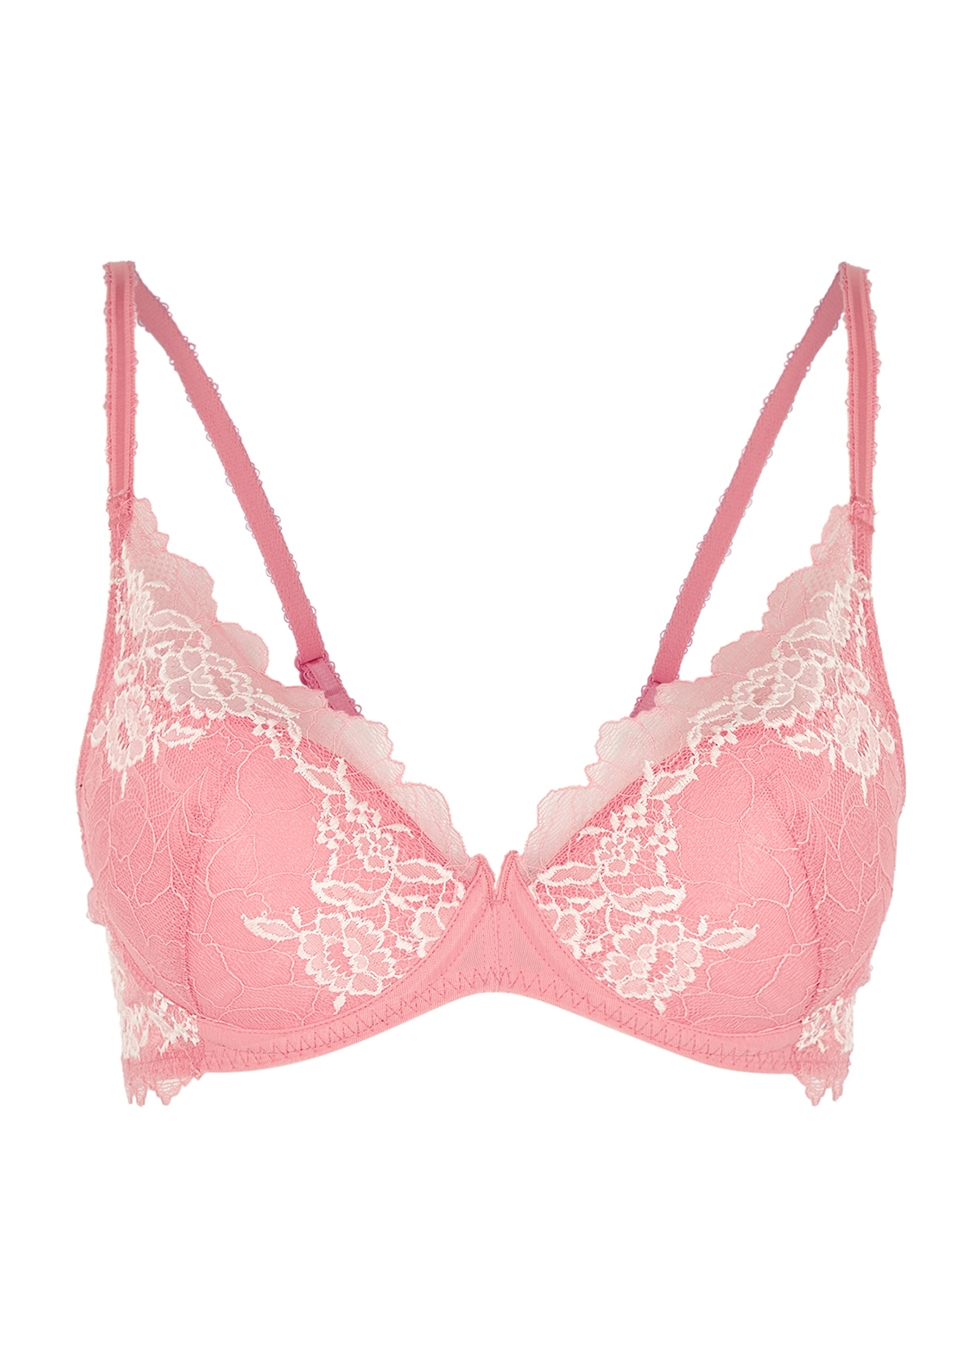 Wacoal Lace Perfection pink lace push-up bra - Harvey Nichols